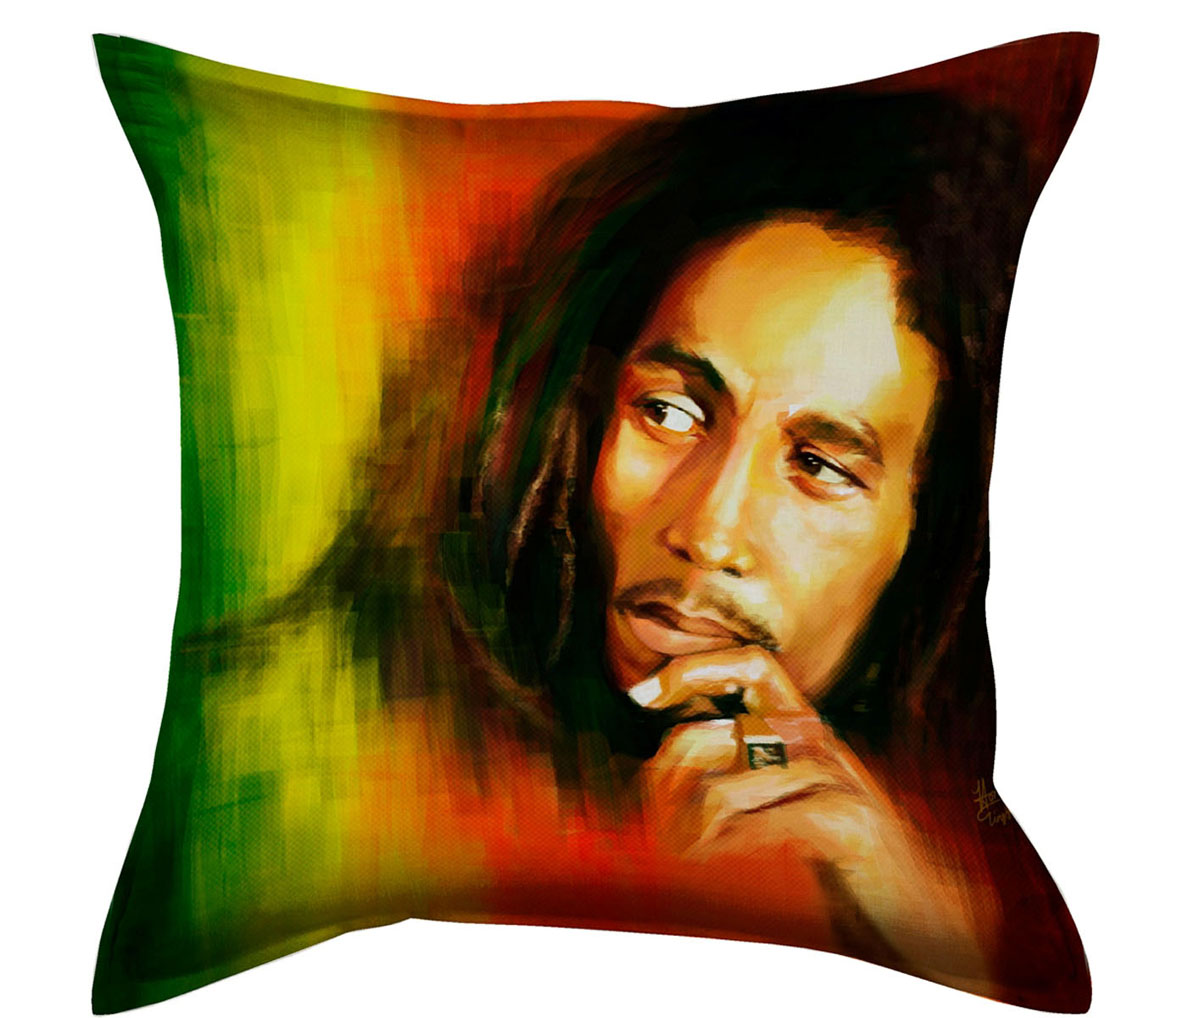   Garden Bob Marley, 45   45  - Garden W1822(1687) V98  Garden Bob Marley      .     .         ,   -  .  -  .     .              .